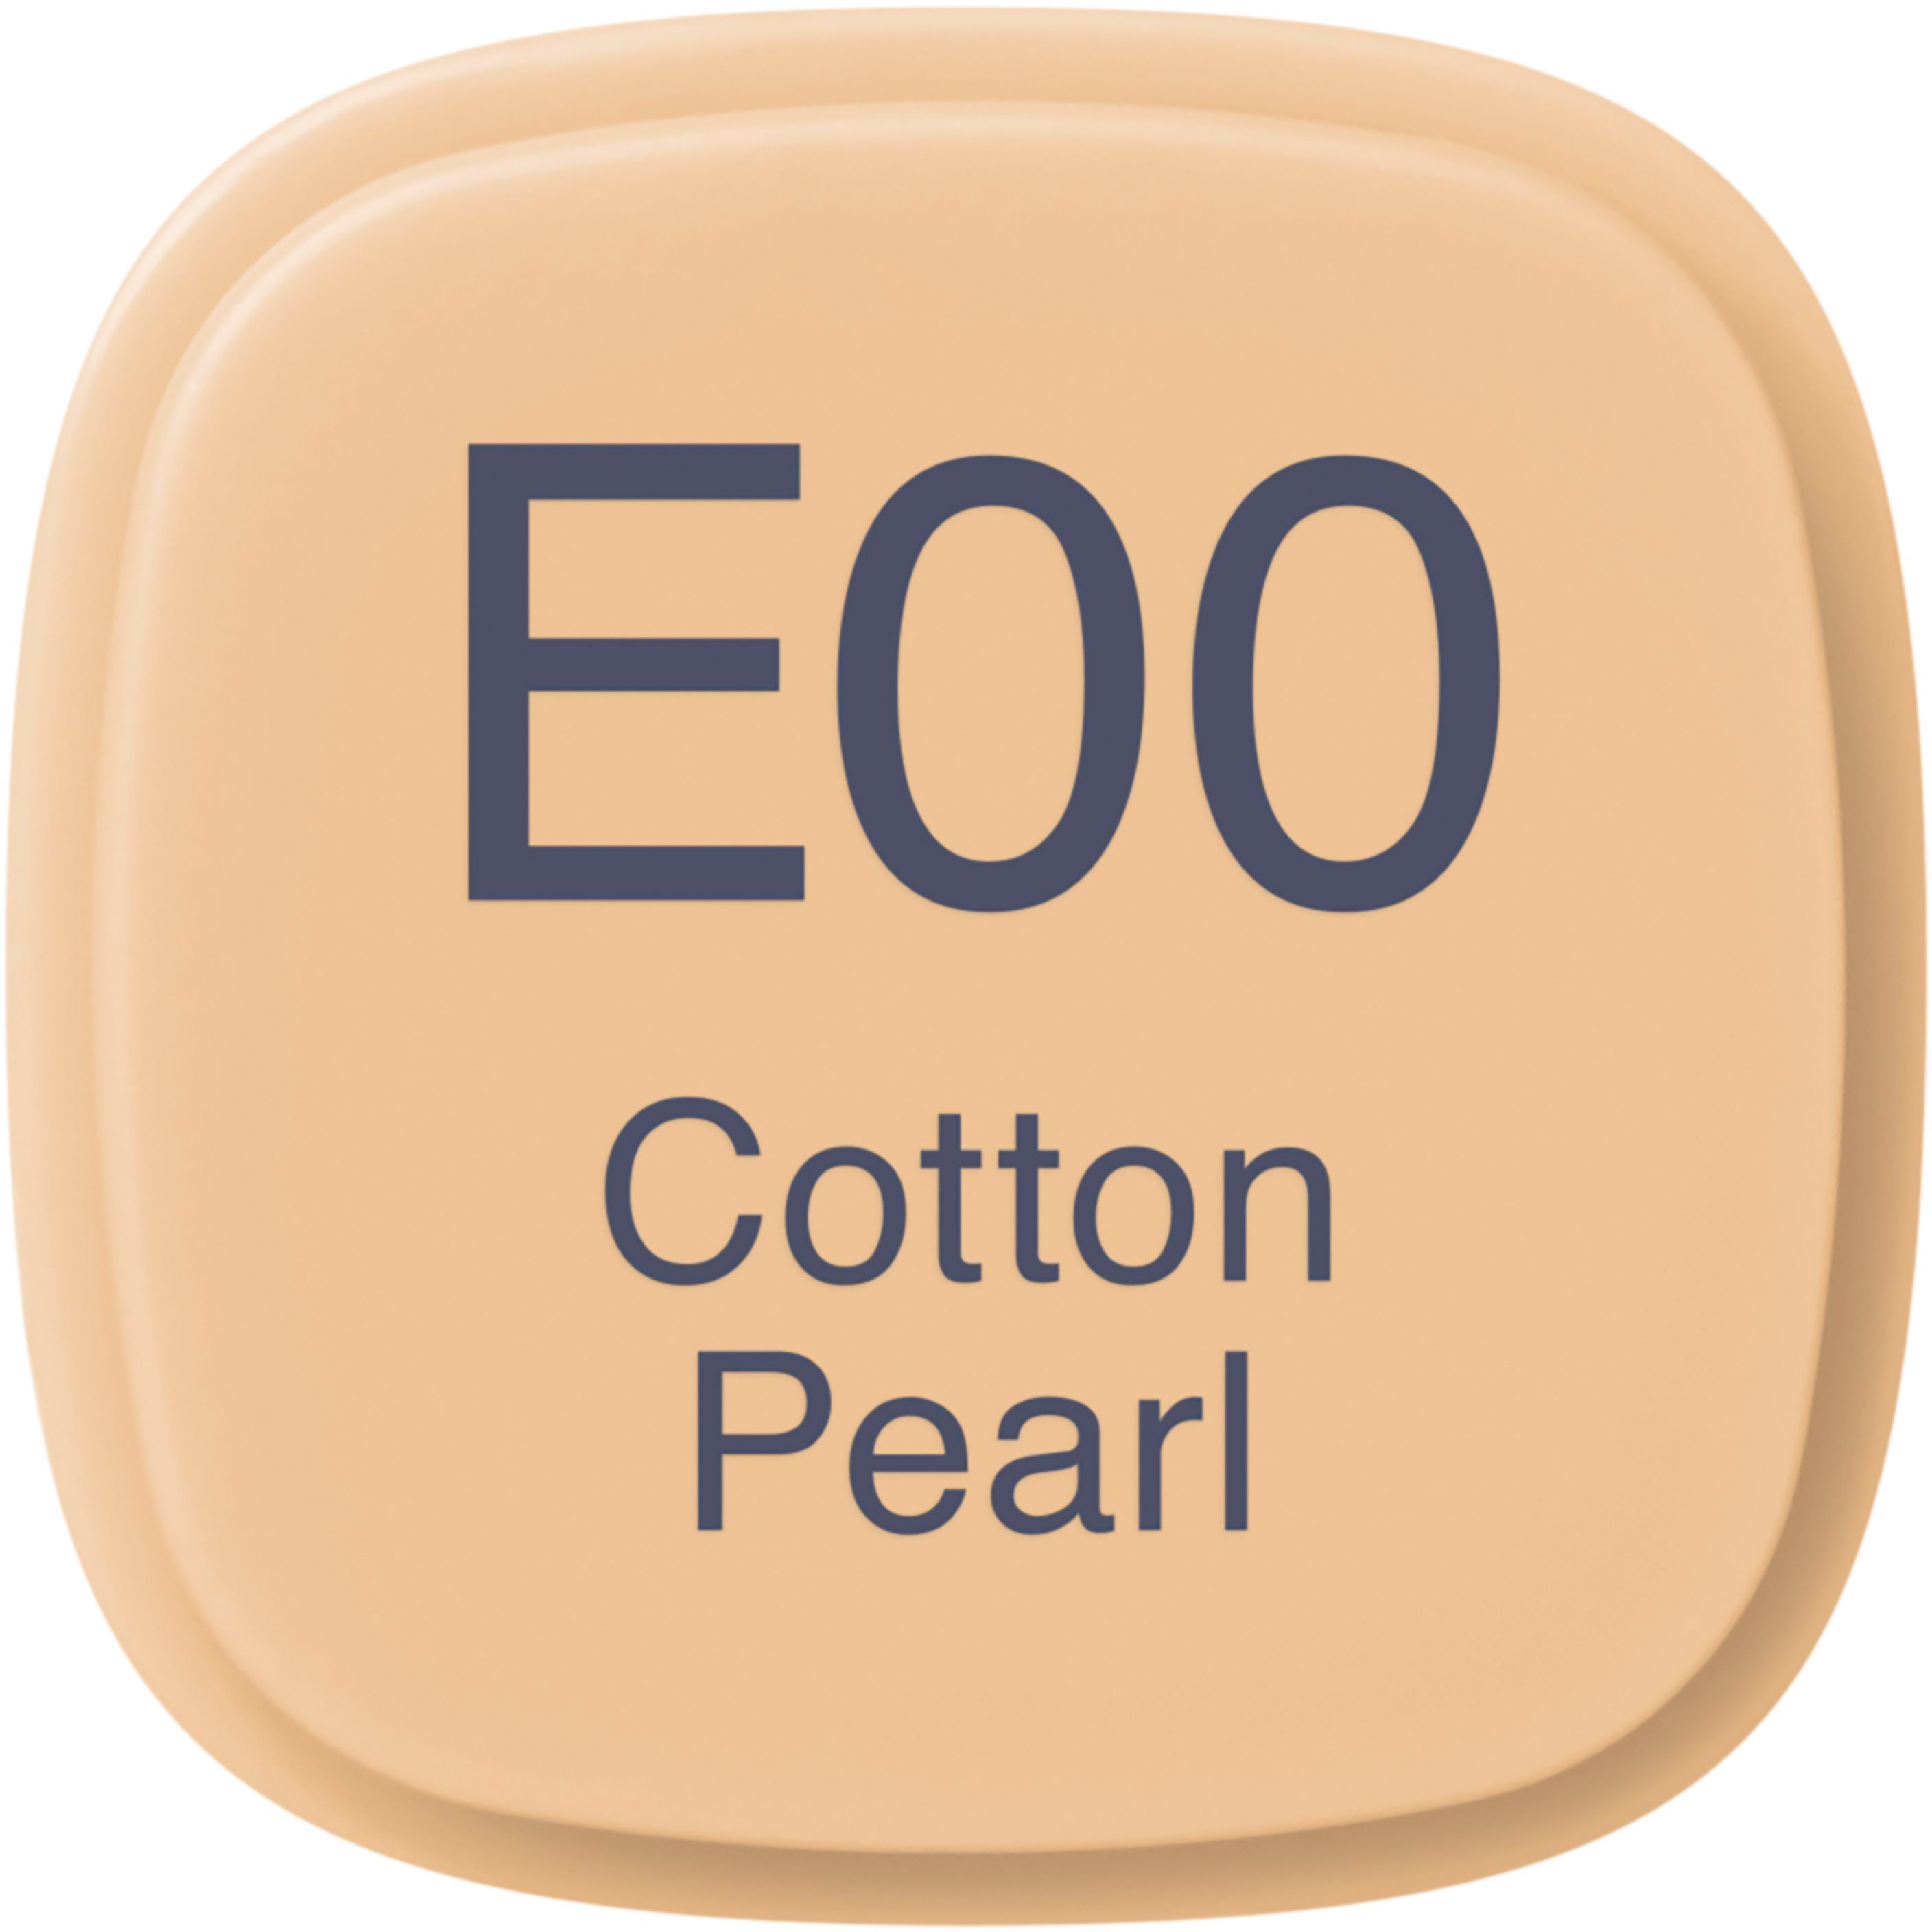 COPIC Marker Classic 20075229 E00 - Cotton Pearl